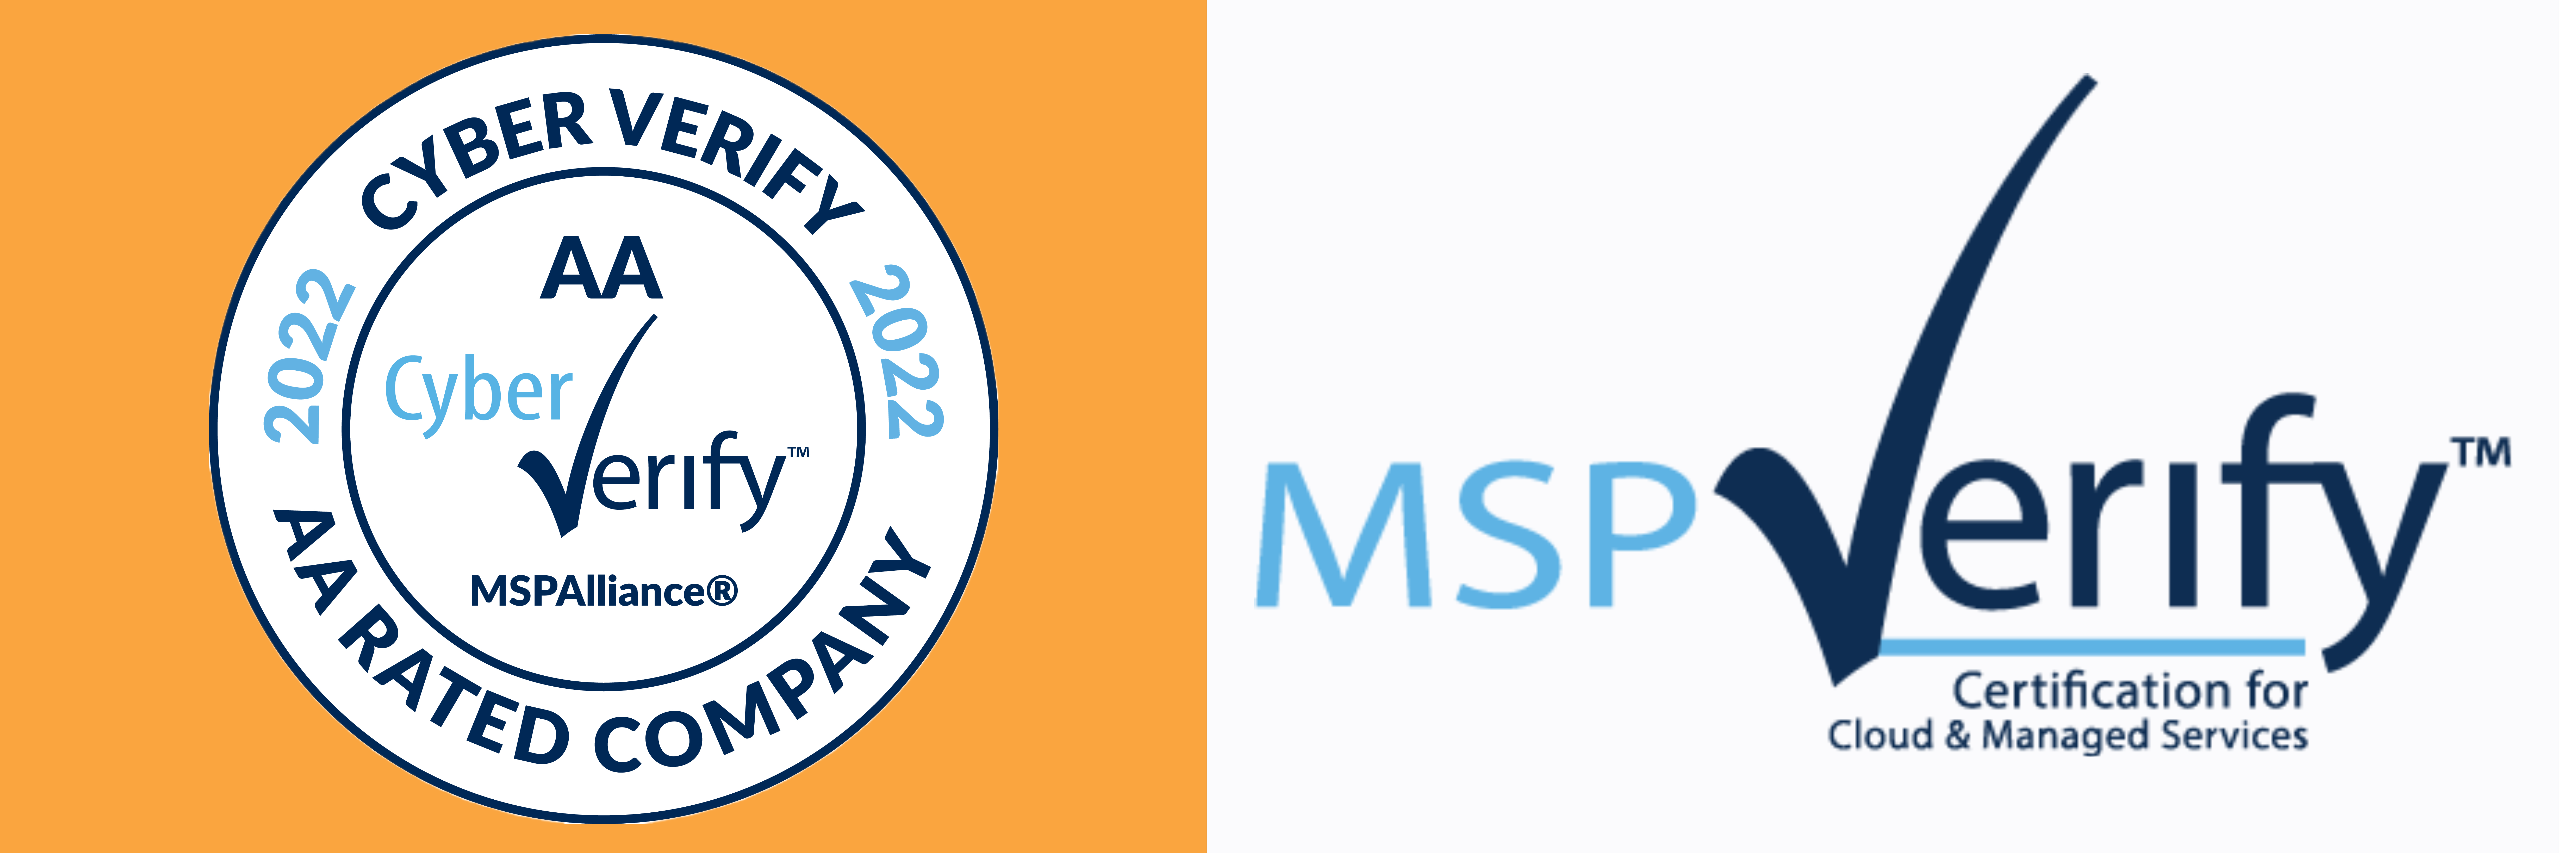 MSPCV logo 2